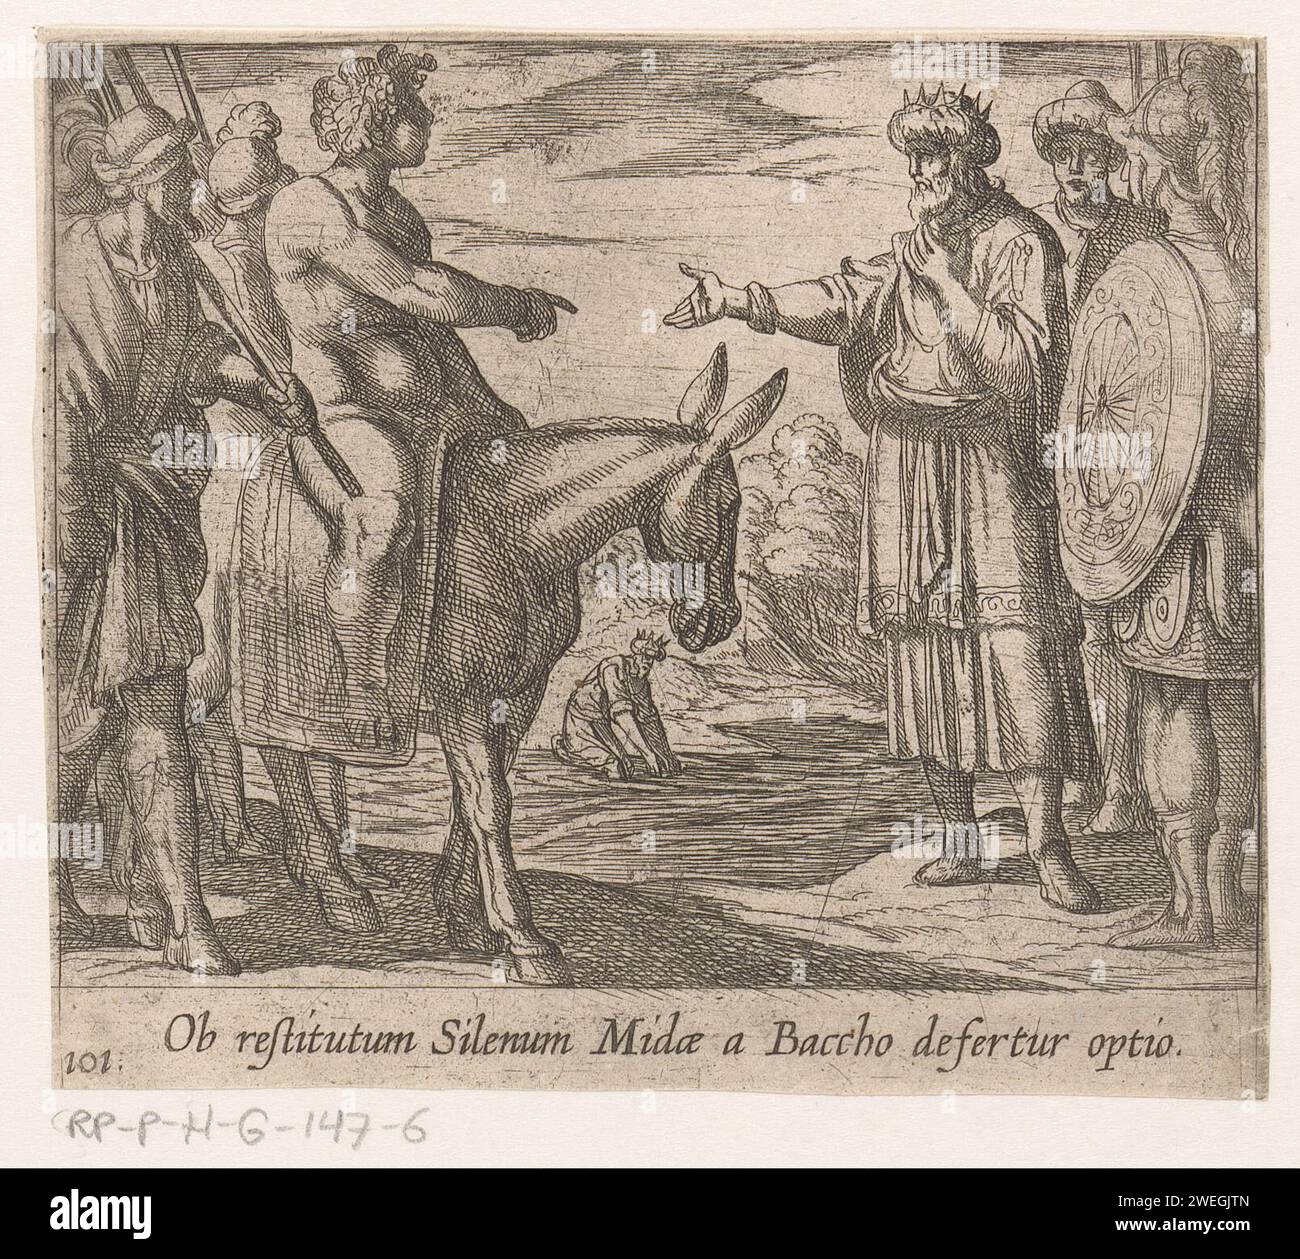 Bacchus permet à Midas un vœu, Antonio Tempesta, 1606 - 1638 imprimer Bacchus est assis sur un âne et permet au roi Midas de faire un vœu. Titre en latin en STUDMARGE. Papier mordant Midas avant Bacchus Banque D'Images